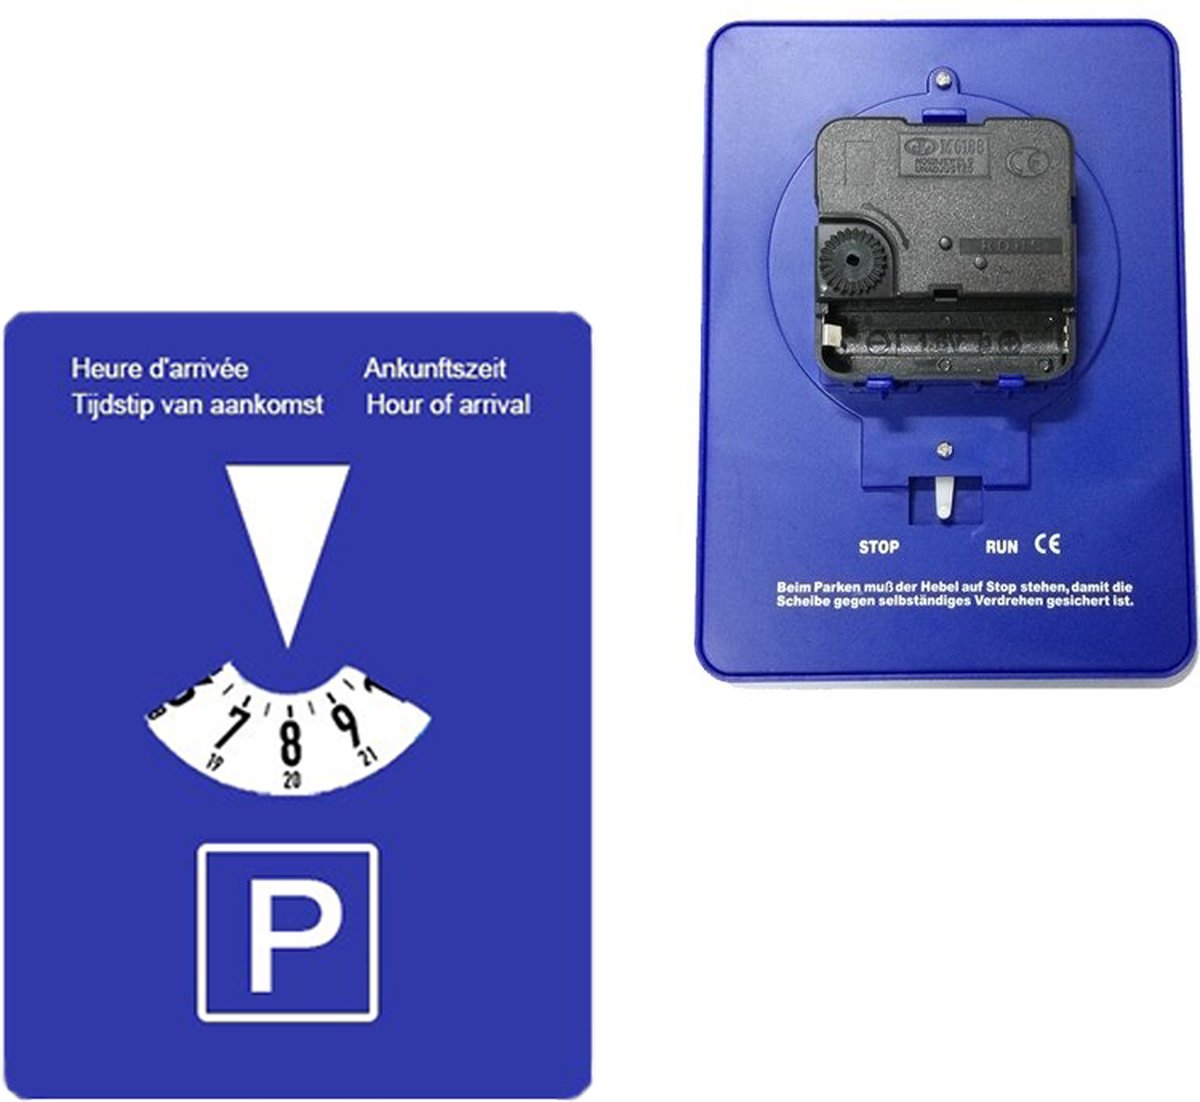 VCTparts Automatisch Roterende Blauwe Parkeerschijf / Parkeerkaart - Parkeren in de blauwe zone (4 talen)